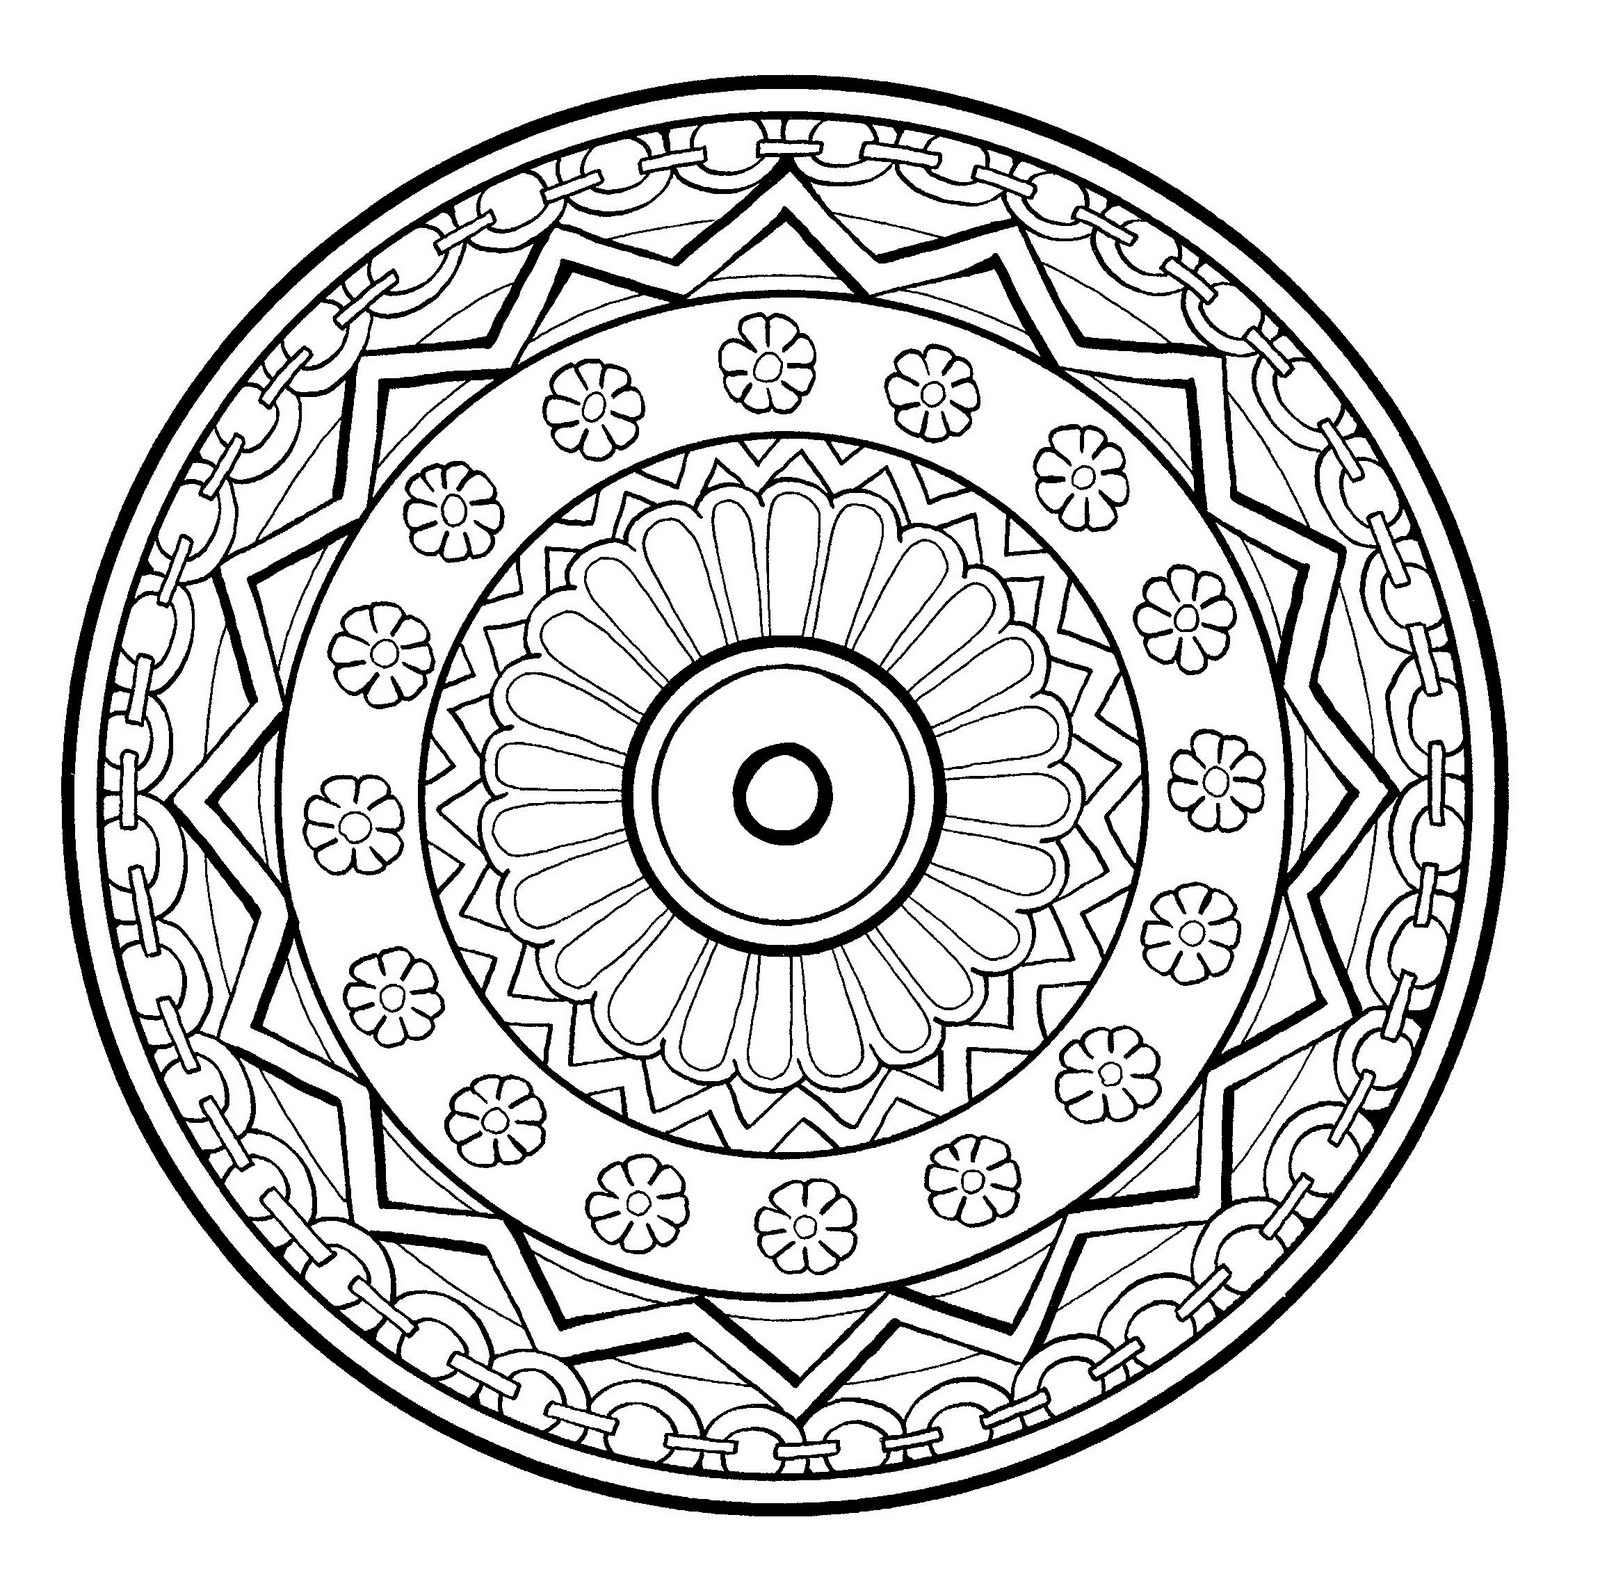 Superbe mandala avec spirale, assez fleuri où figure différents éléments tels que des fleurs, des formes géométrique ou encore des chaînes tout autour de celui-ci. Niveau assez normal.